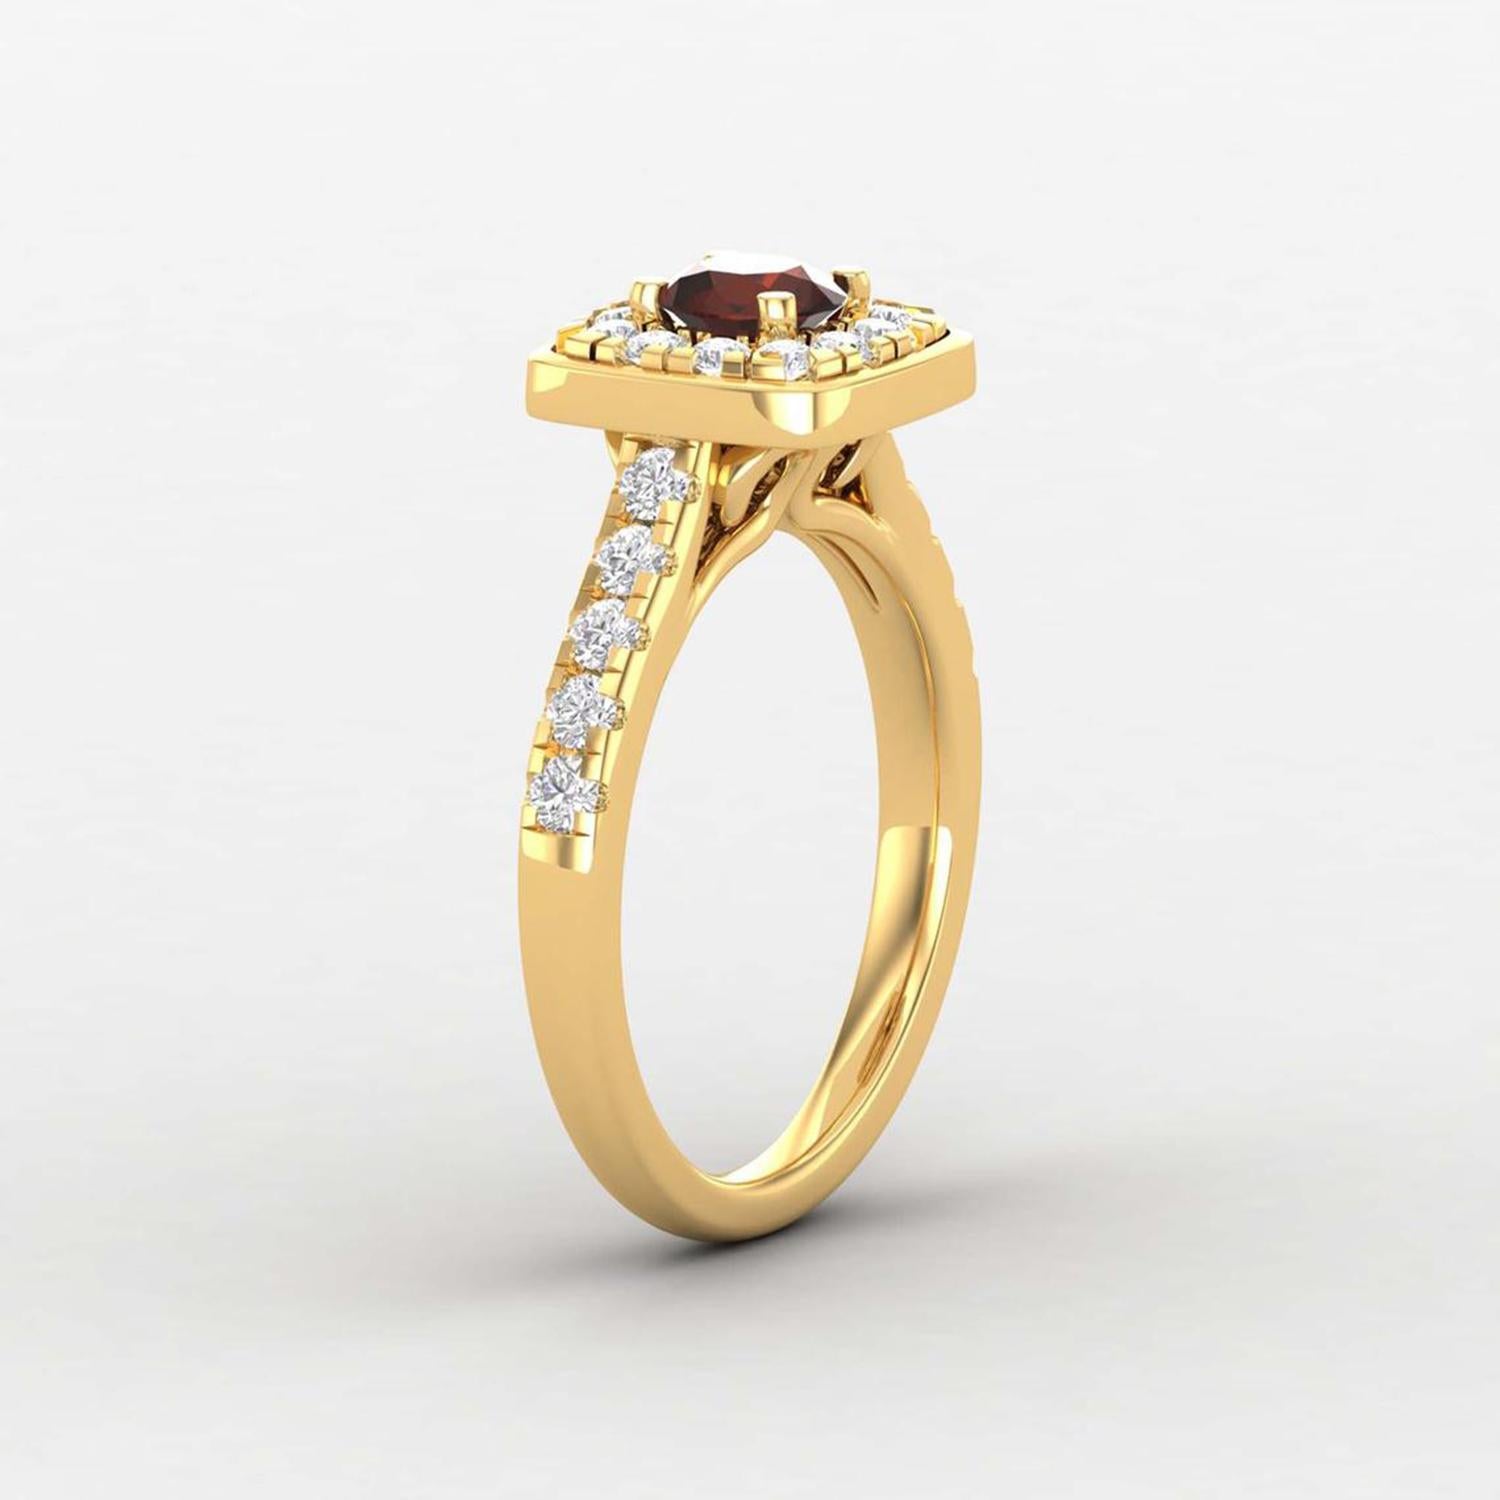 Detalles del artículo:-

✦ SKU:- JRG00334YYY

✦ Especificación del producto:-
- Oro Kt: 14K (también disponible en 18K)
- Color de oro disponible: Oro rosa, Oro amarillo, Oro blanco
- Granate redondo: 1 ud. 5 MM
- Diamante redondo (H-I) (SI): 10